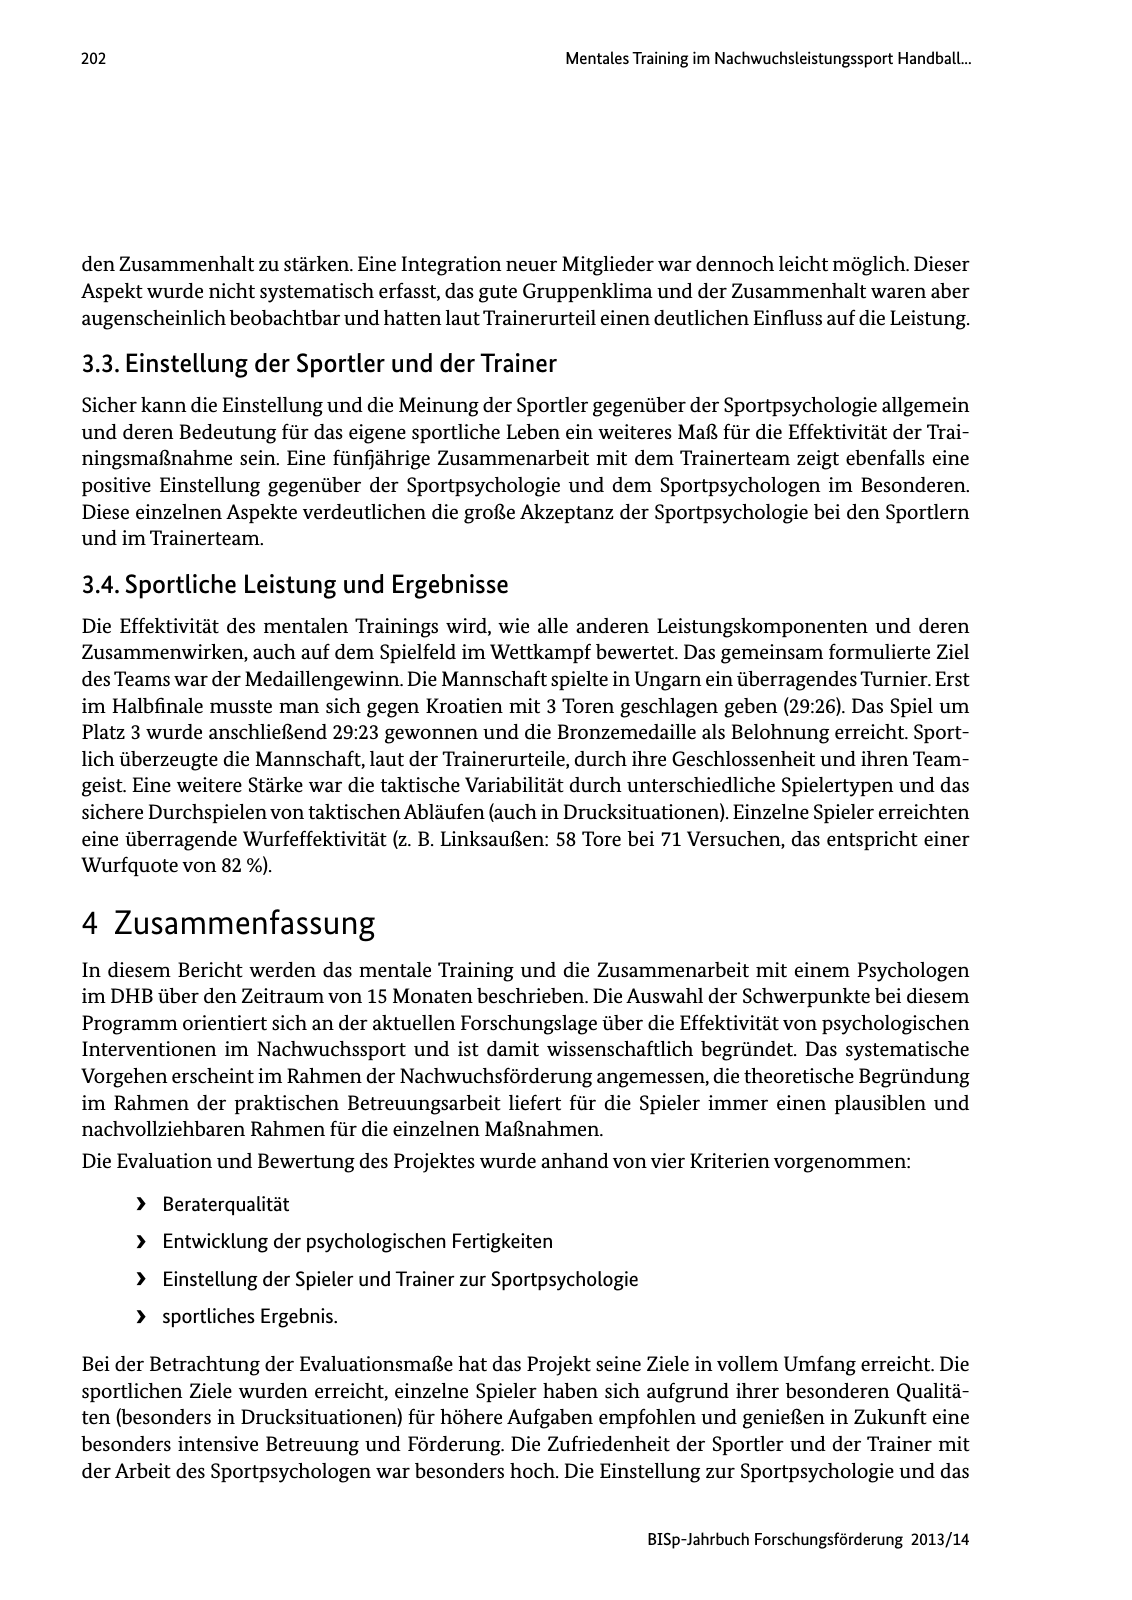 Vorschau BISp-Jahrbuch Forschungsförderung 2013/14 Seite 203